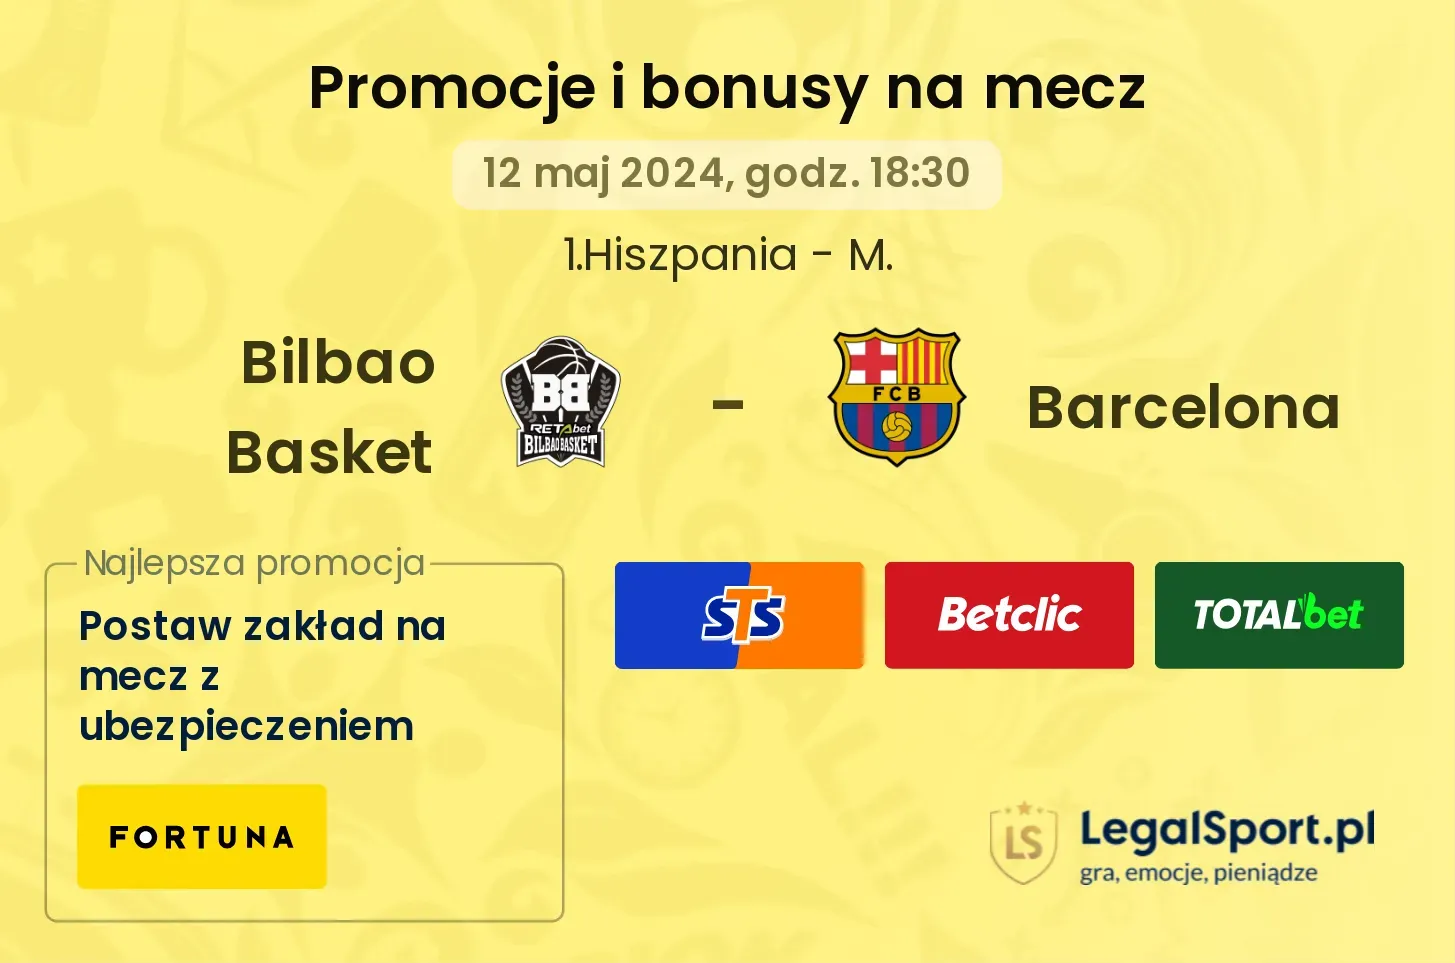 Bilbao Basket - Barcelona bonusy i promocje (12.05, 18:30)